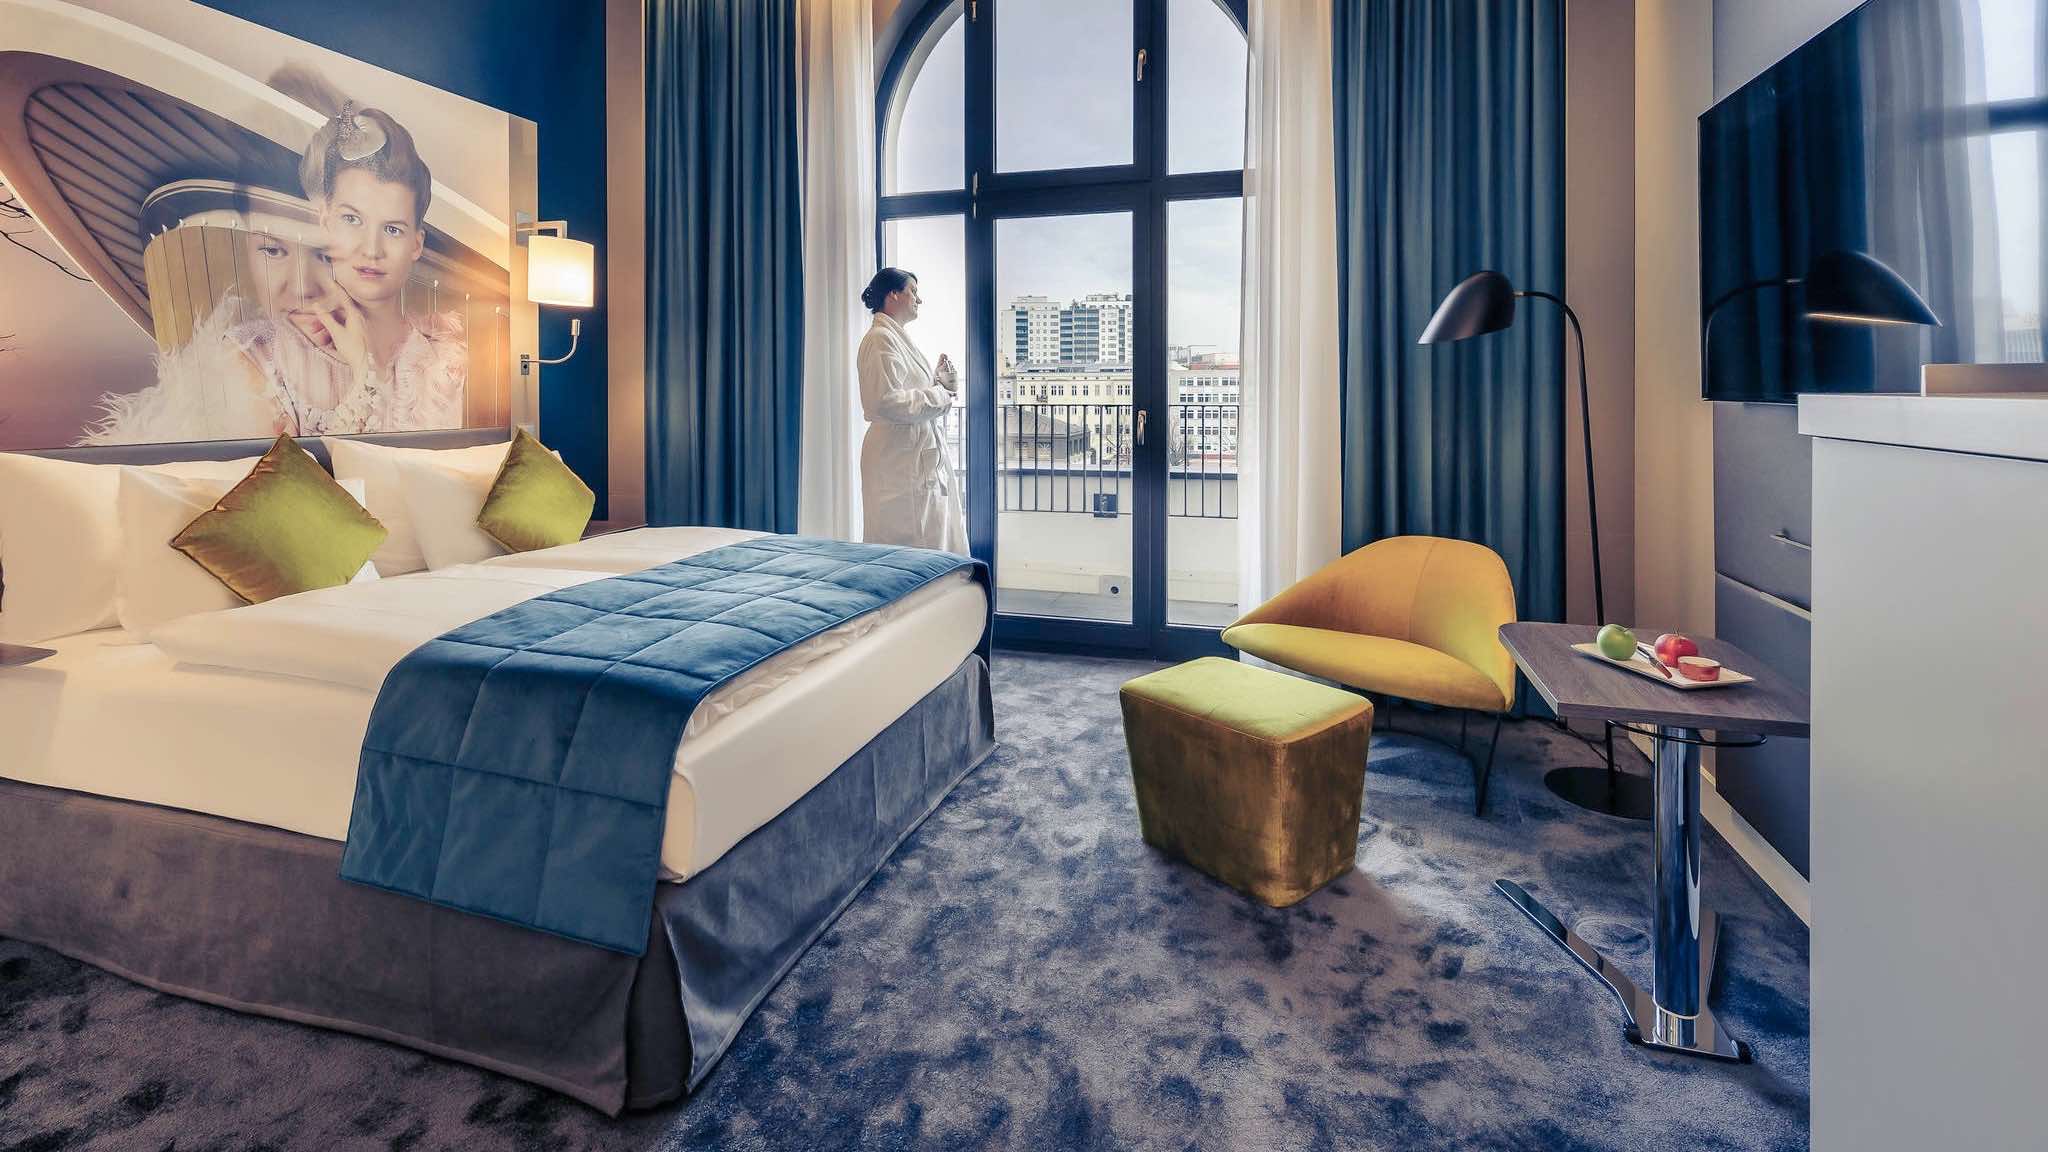 Mercure Hotel Berlin Wittenbergplatz luxury design hotel in Berlin with woman standing at window in bathrobe